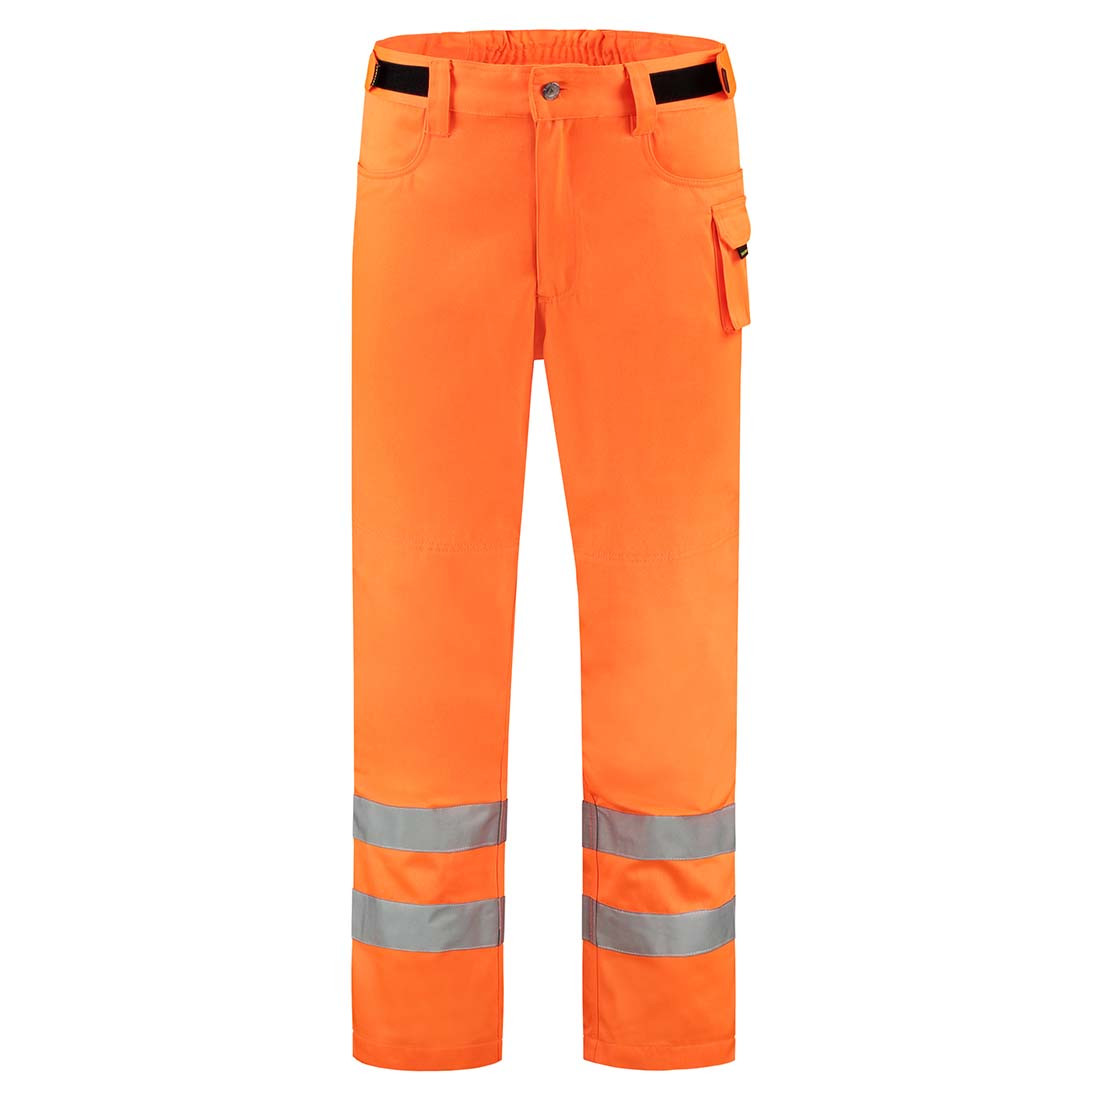 Pantalon de travail unisexe réfléchissant - Les vêtements de protection